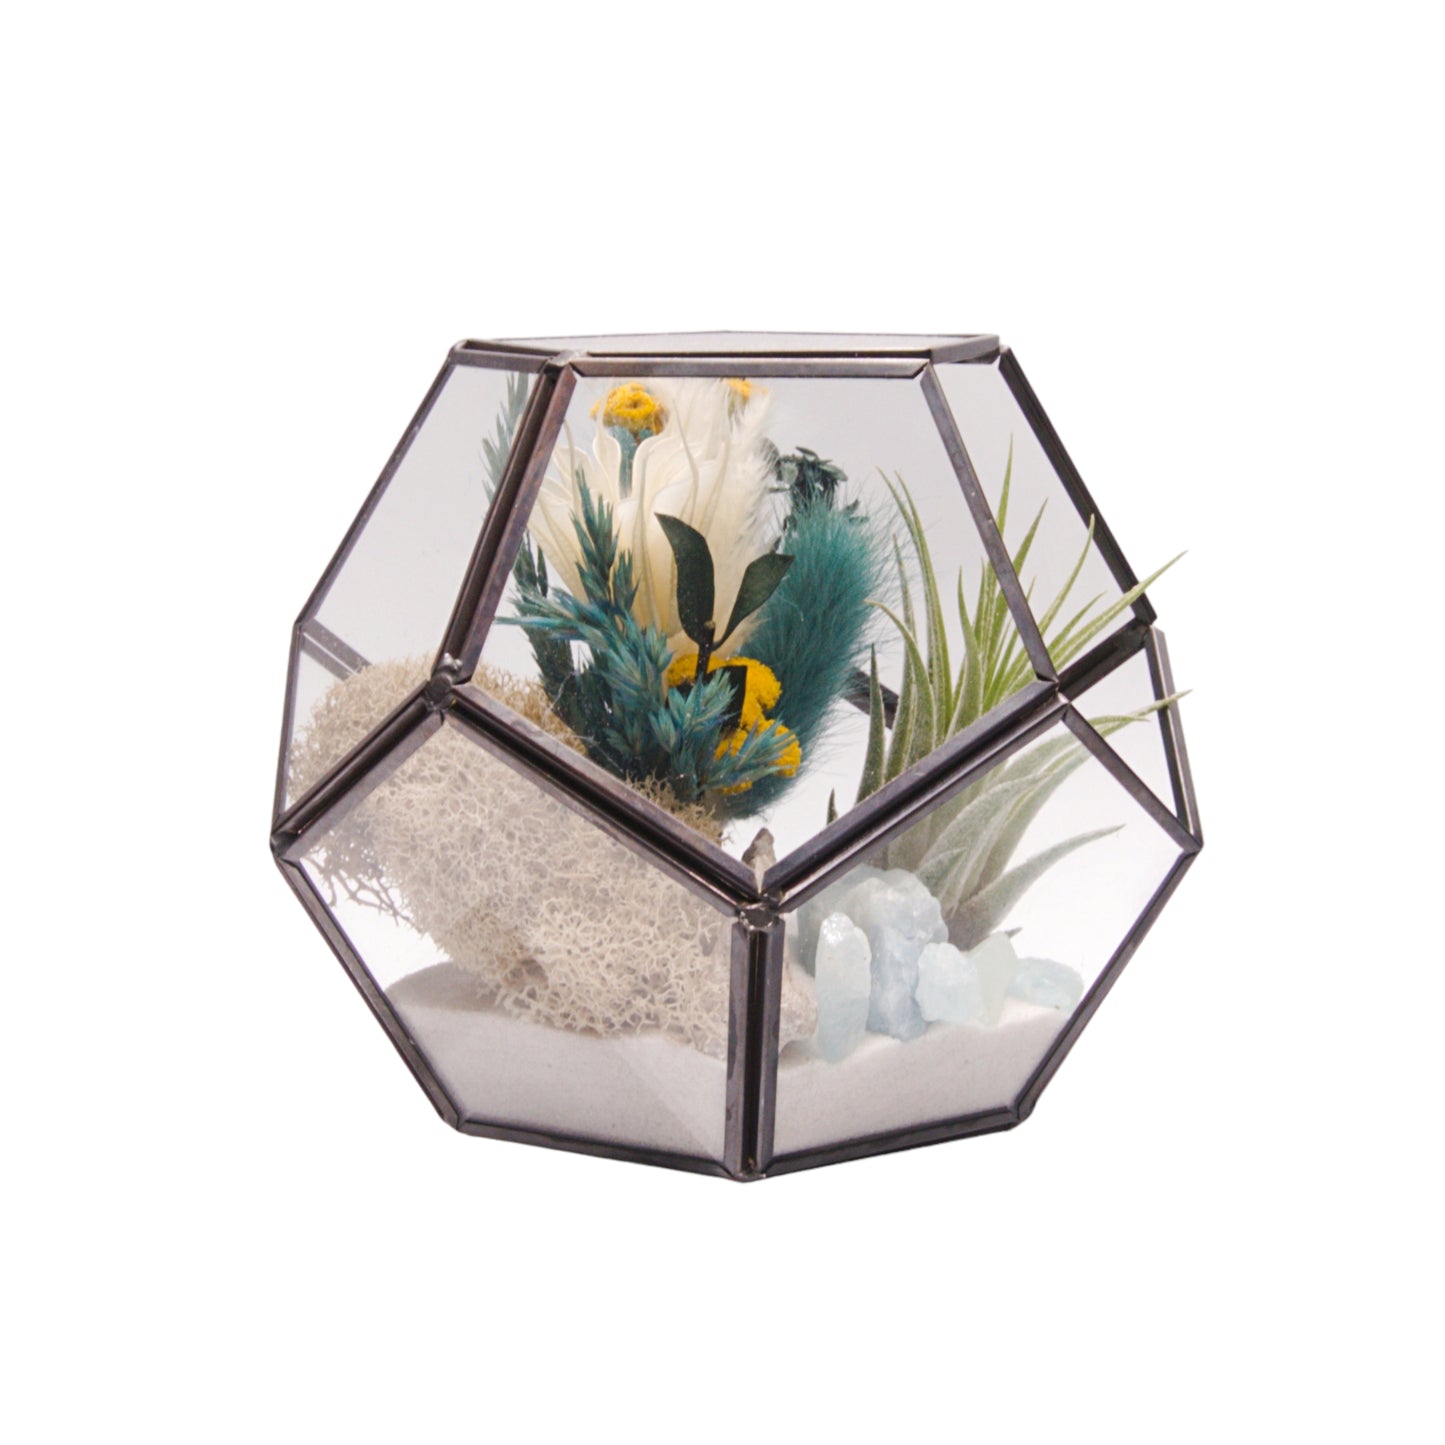 Terrarium Victorian à bol avec une plante aérienne et des cristaux d'aigue-marine